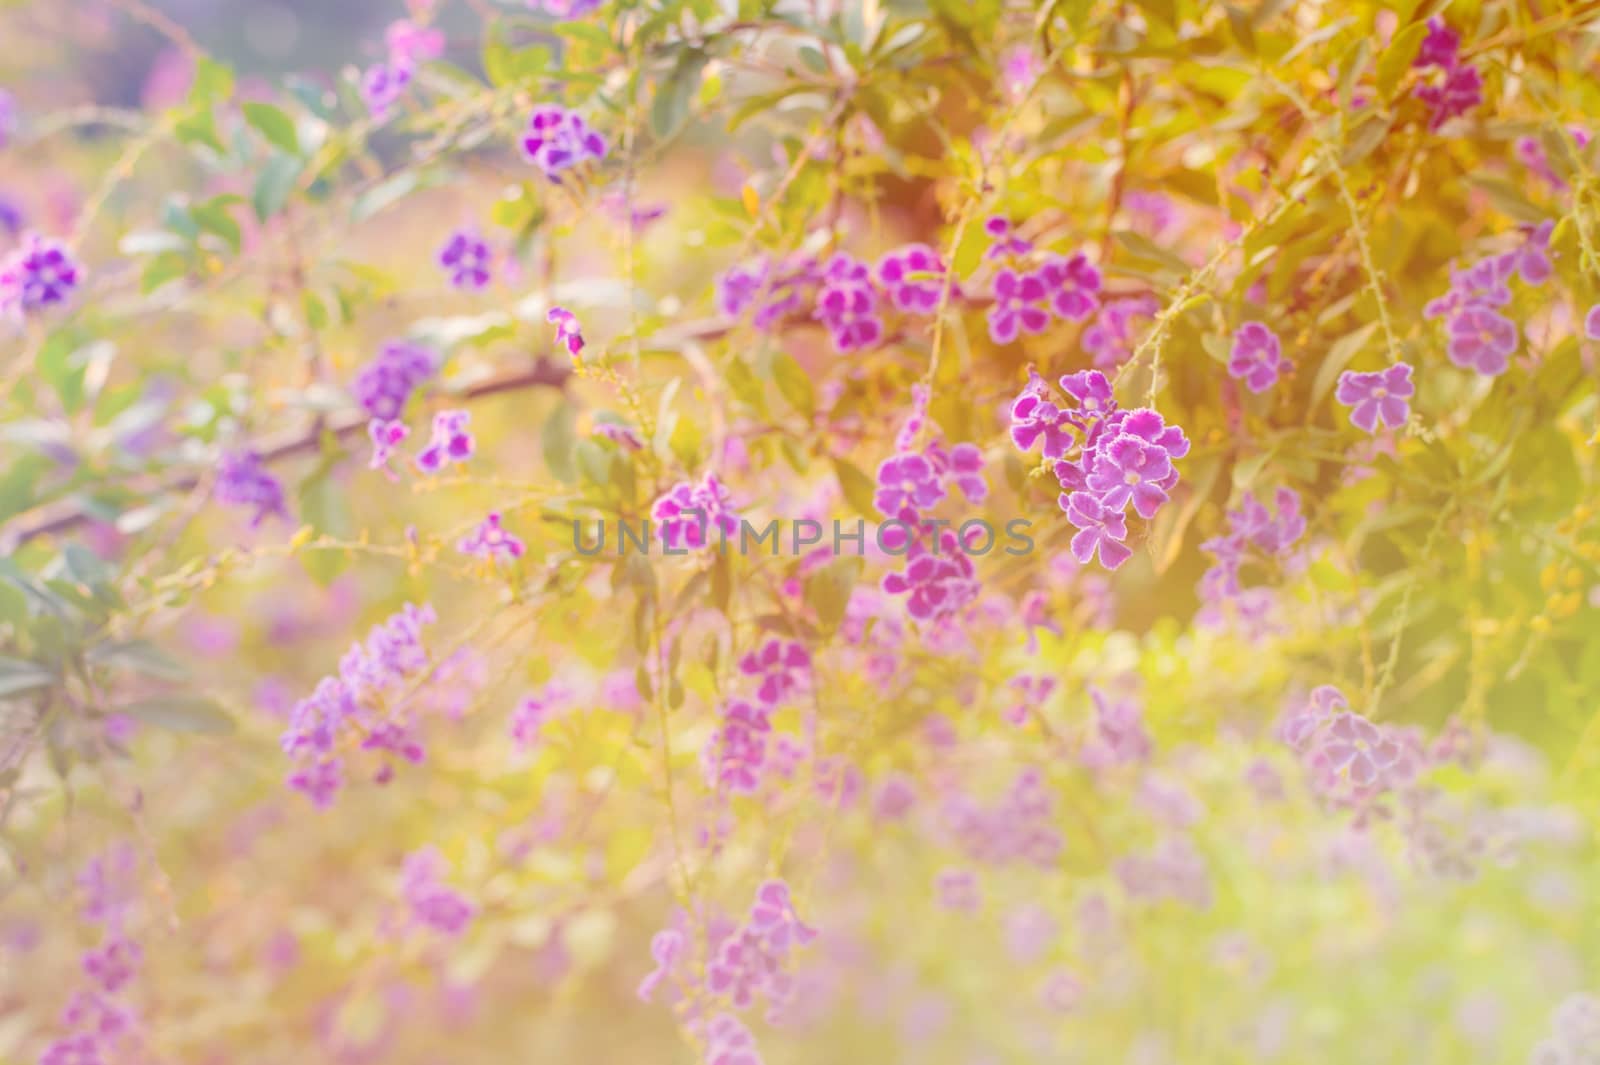 Beautiful flower by jimbophoto